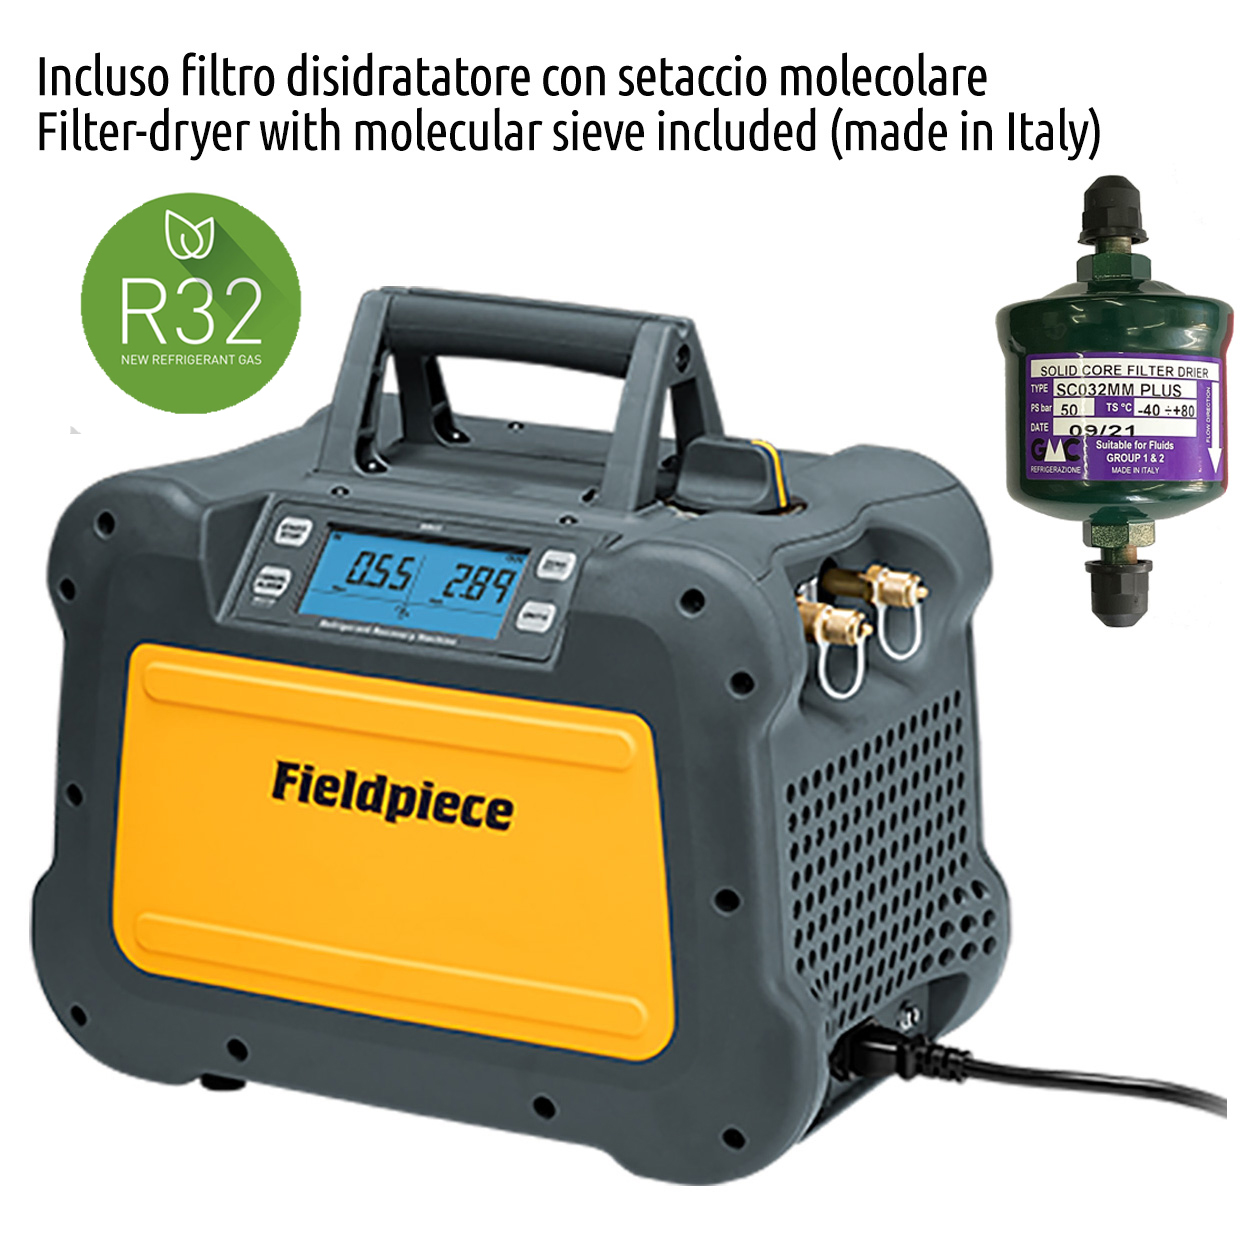 Fieldpiece USA - MR45INT - Recuperatore gas refrigerante digitale da 1 HP - 0,75 Kw completo di filtro disidratatore e raccordo